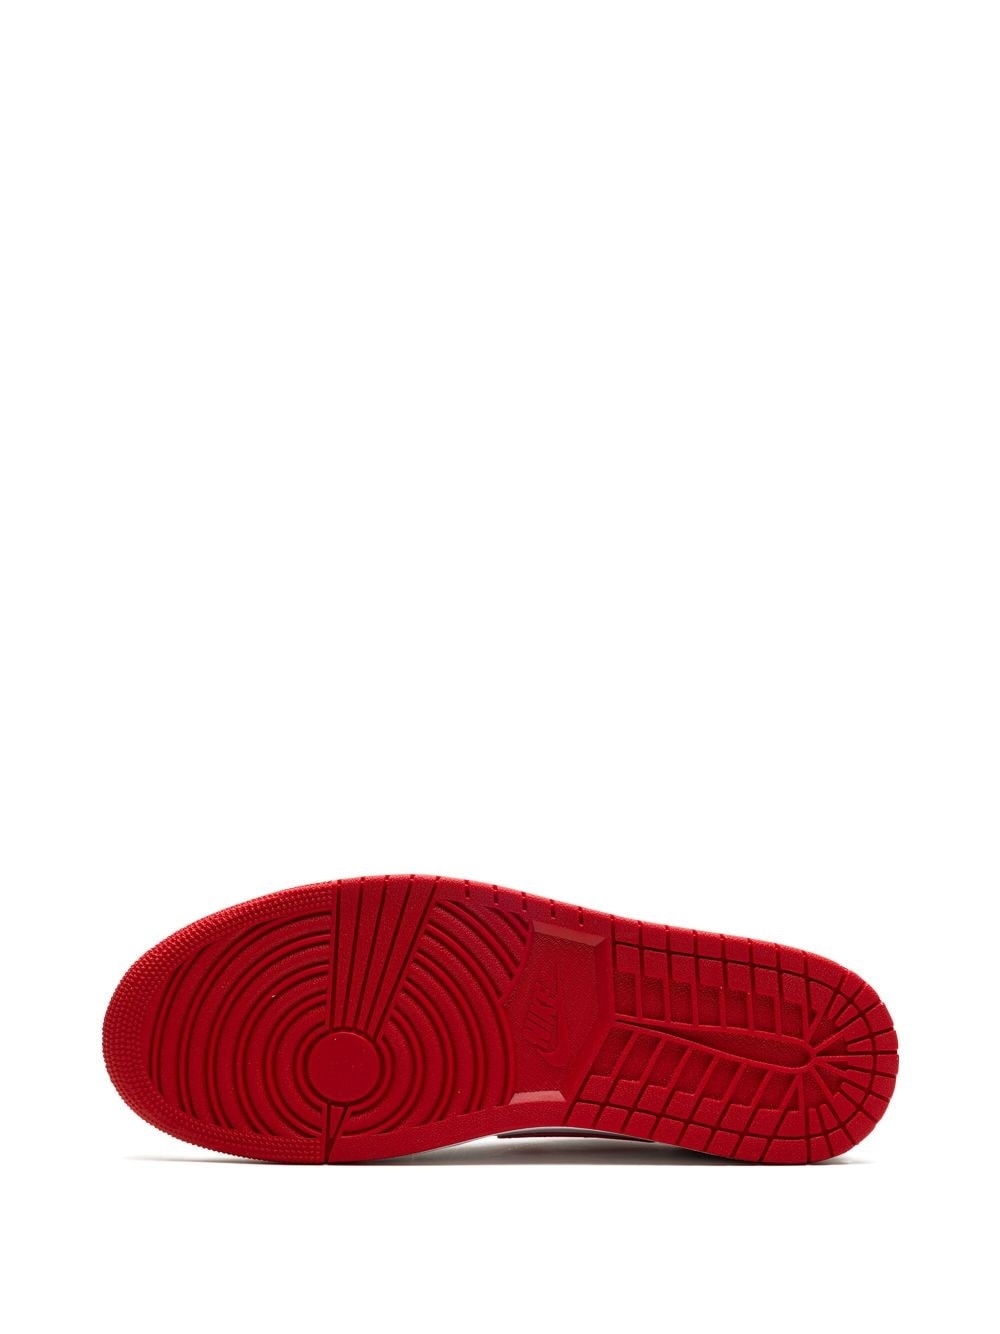 Air Jordan 1 Low OG "University Red" sneakers - 4